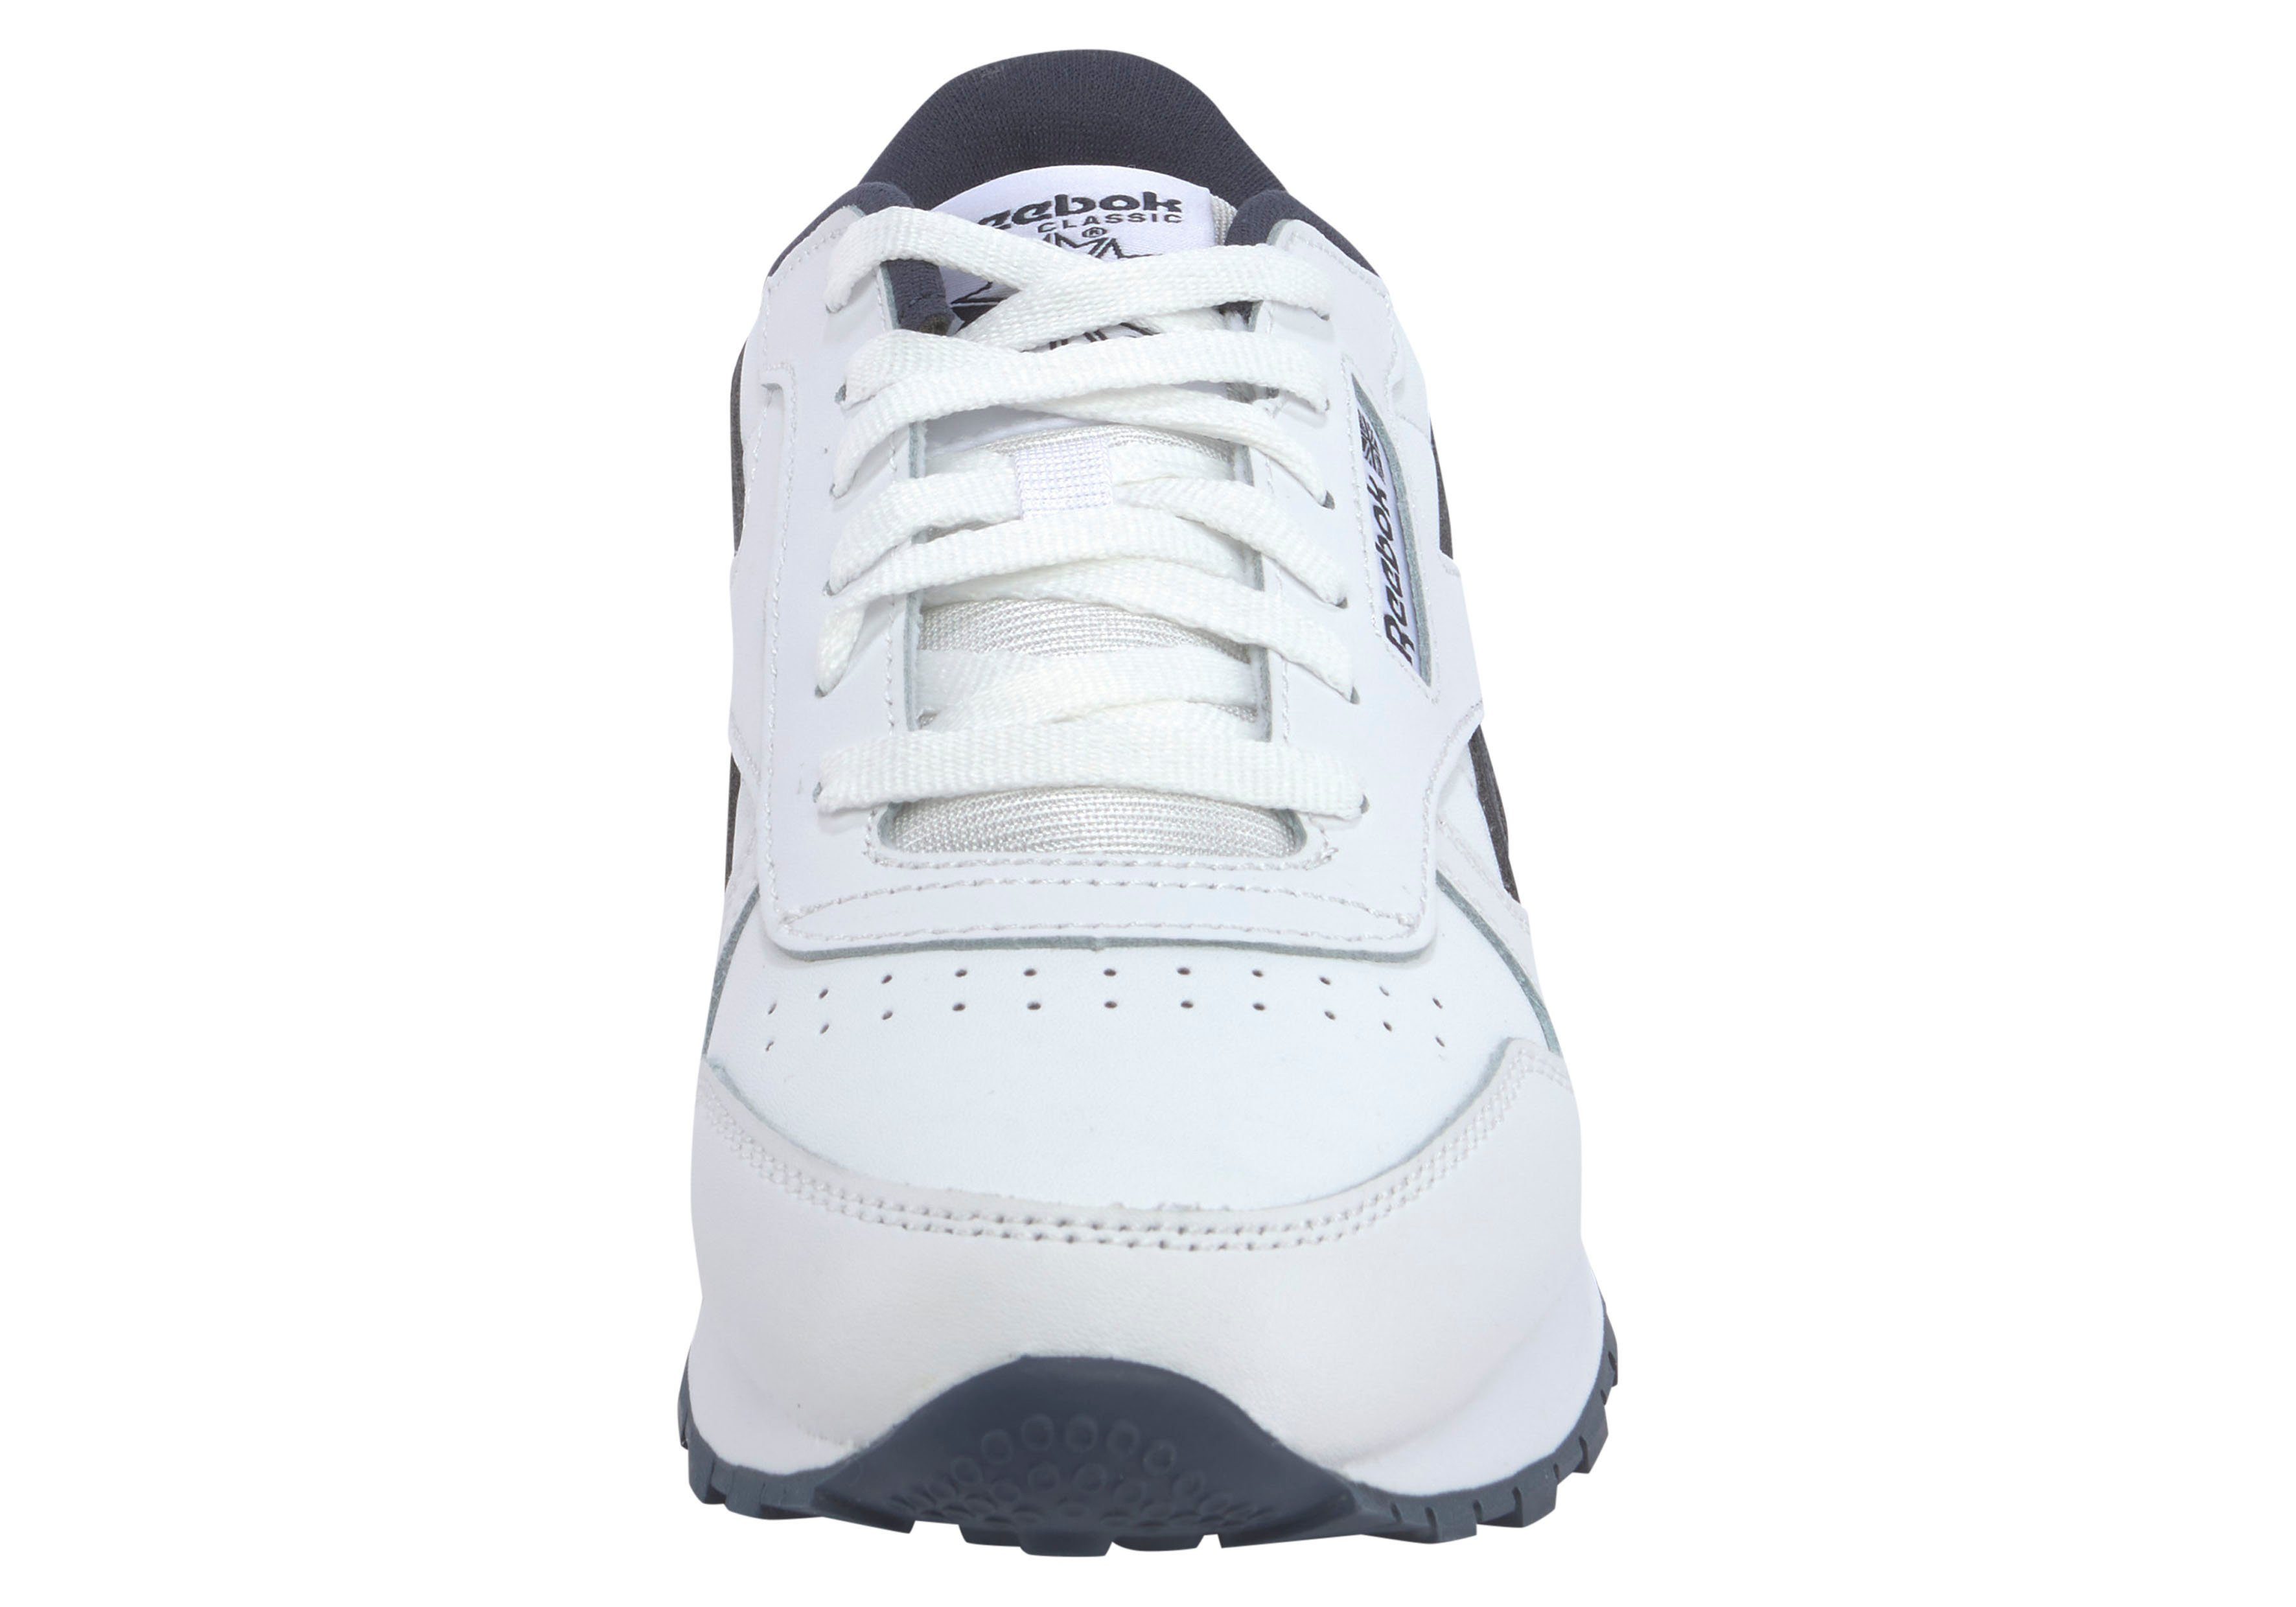 Classic CLASSIC weiß-schwarz LEATHER Sneaker Reebok